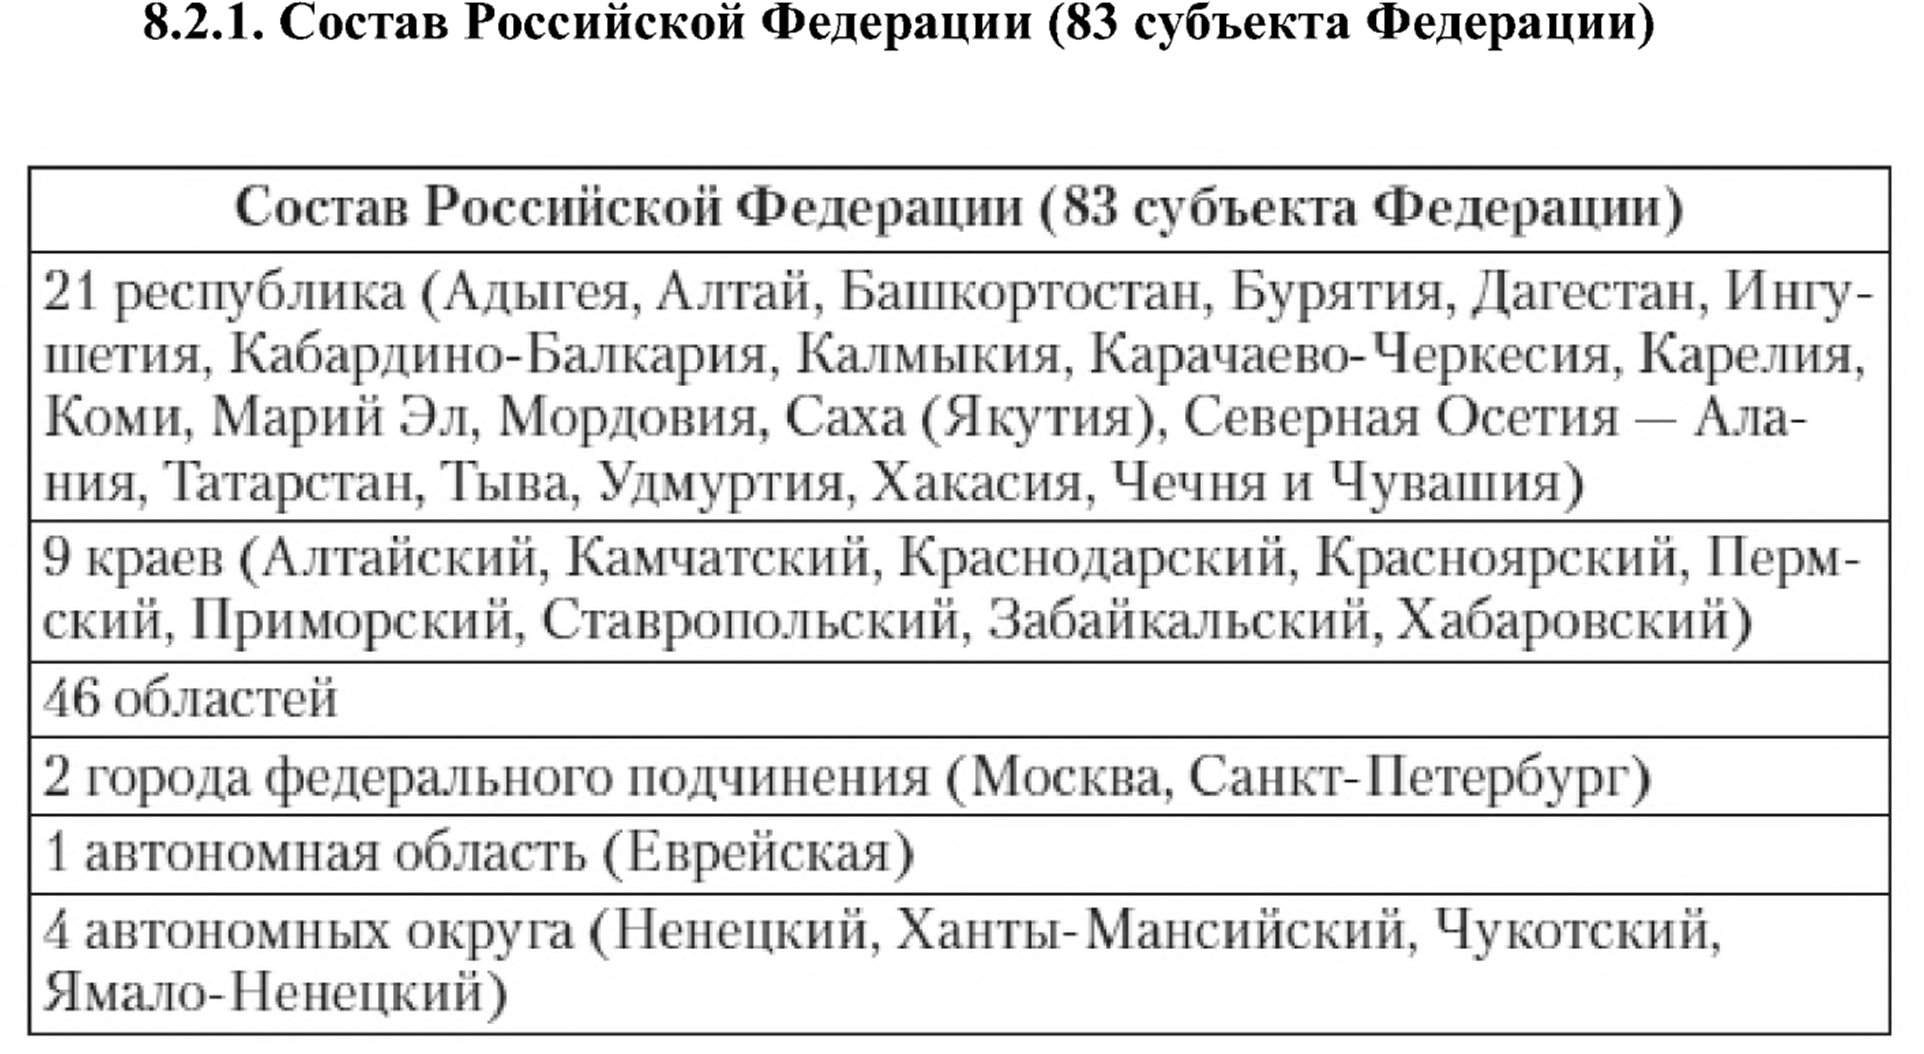 Состав Российской Федерации (83 субъекта Федерации)